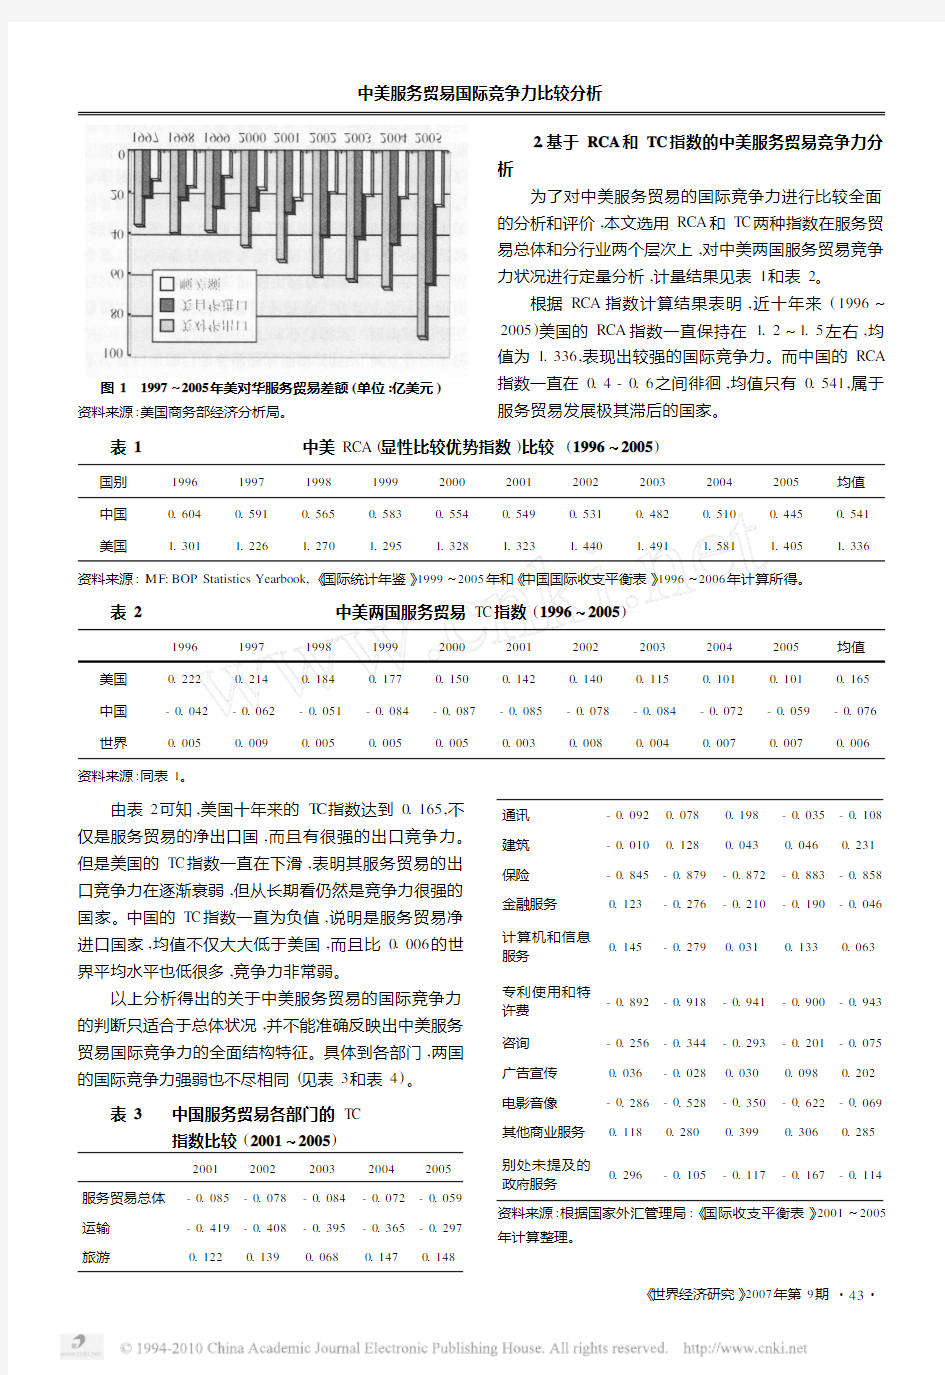 中美服务贸易国际竞争力比较分析_兼论中国服务贸易结构性失衡